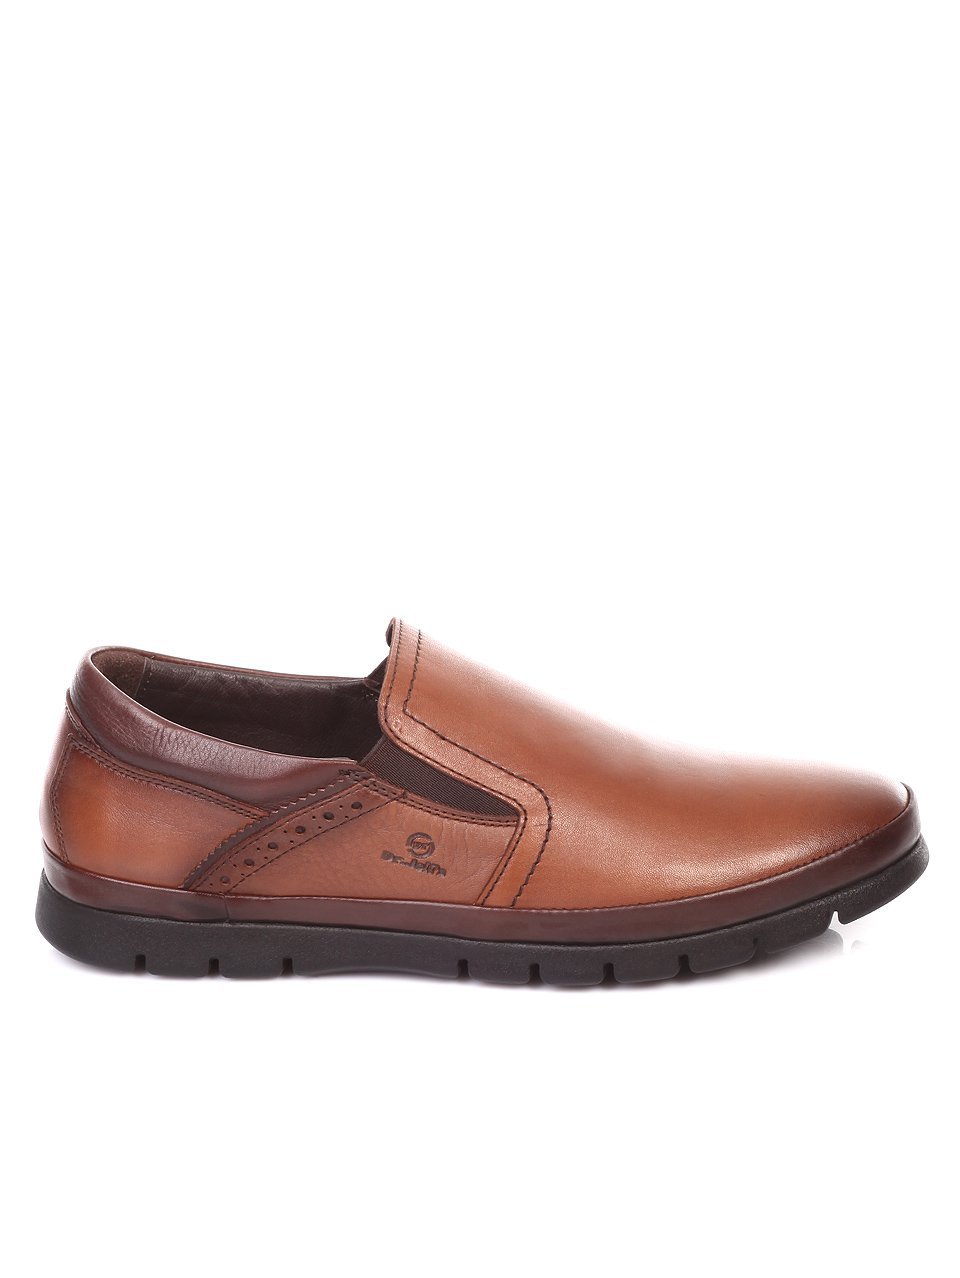 Ежедневни мъжки обувки от естествена кожа в кафяво I878115-2353 brown